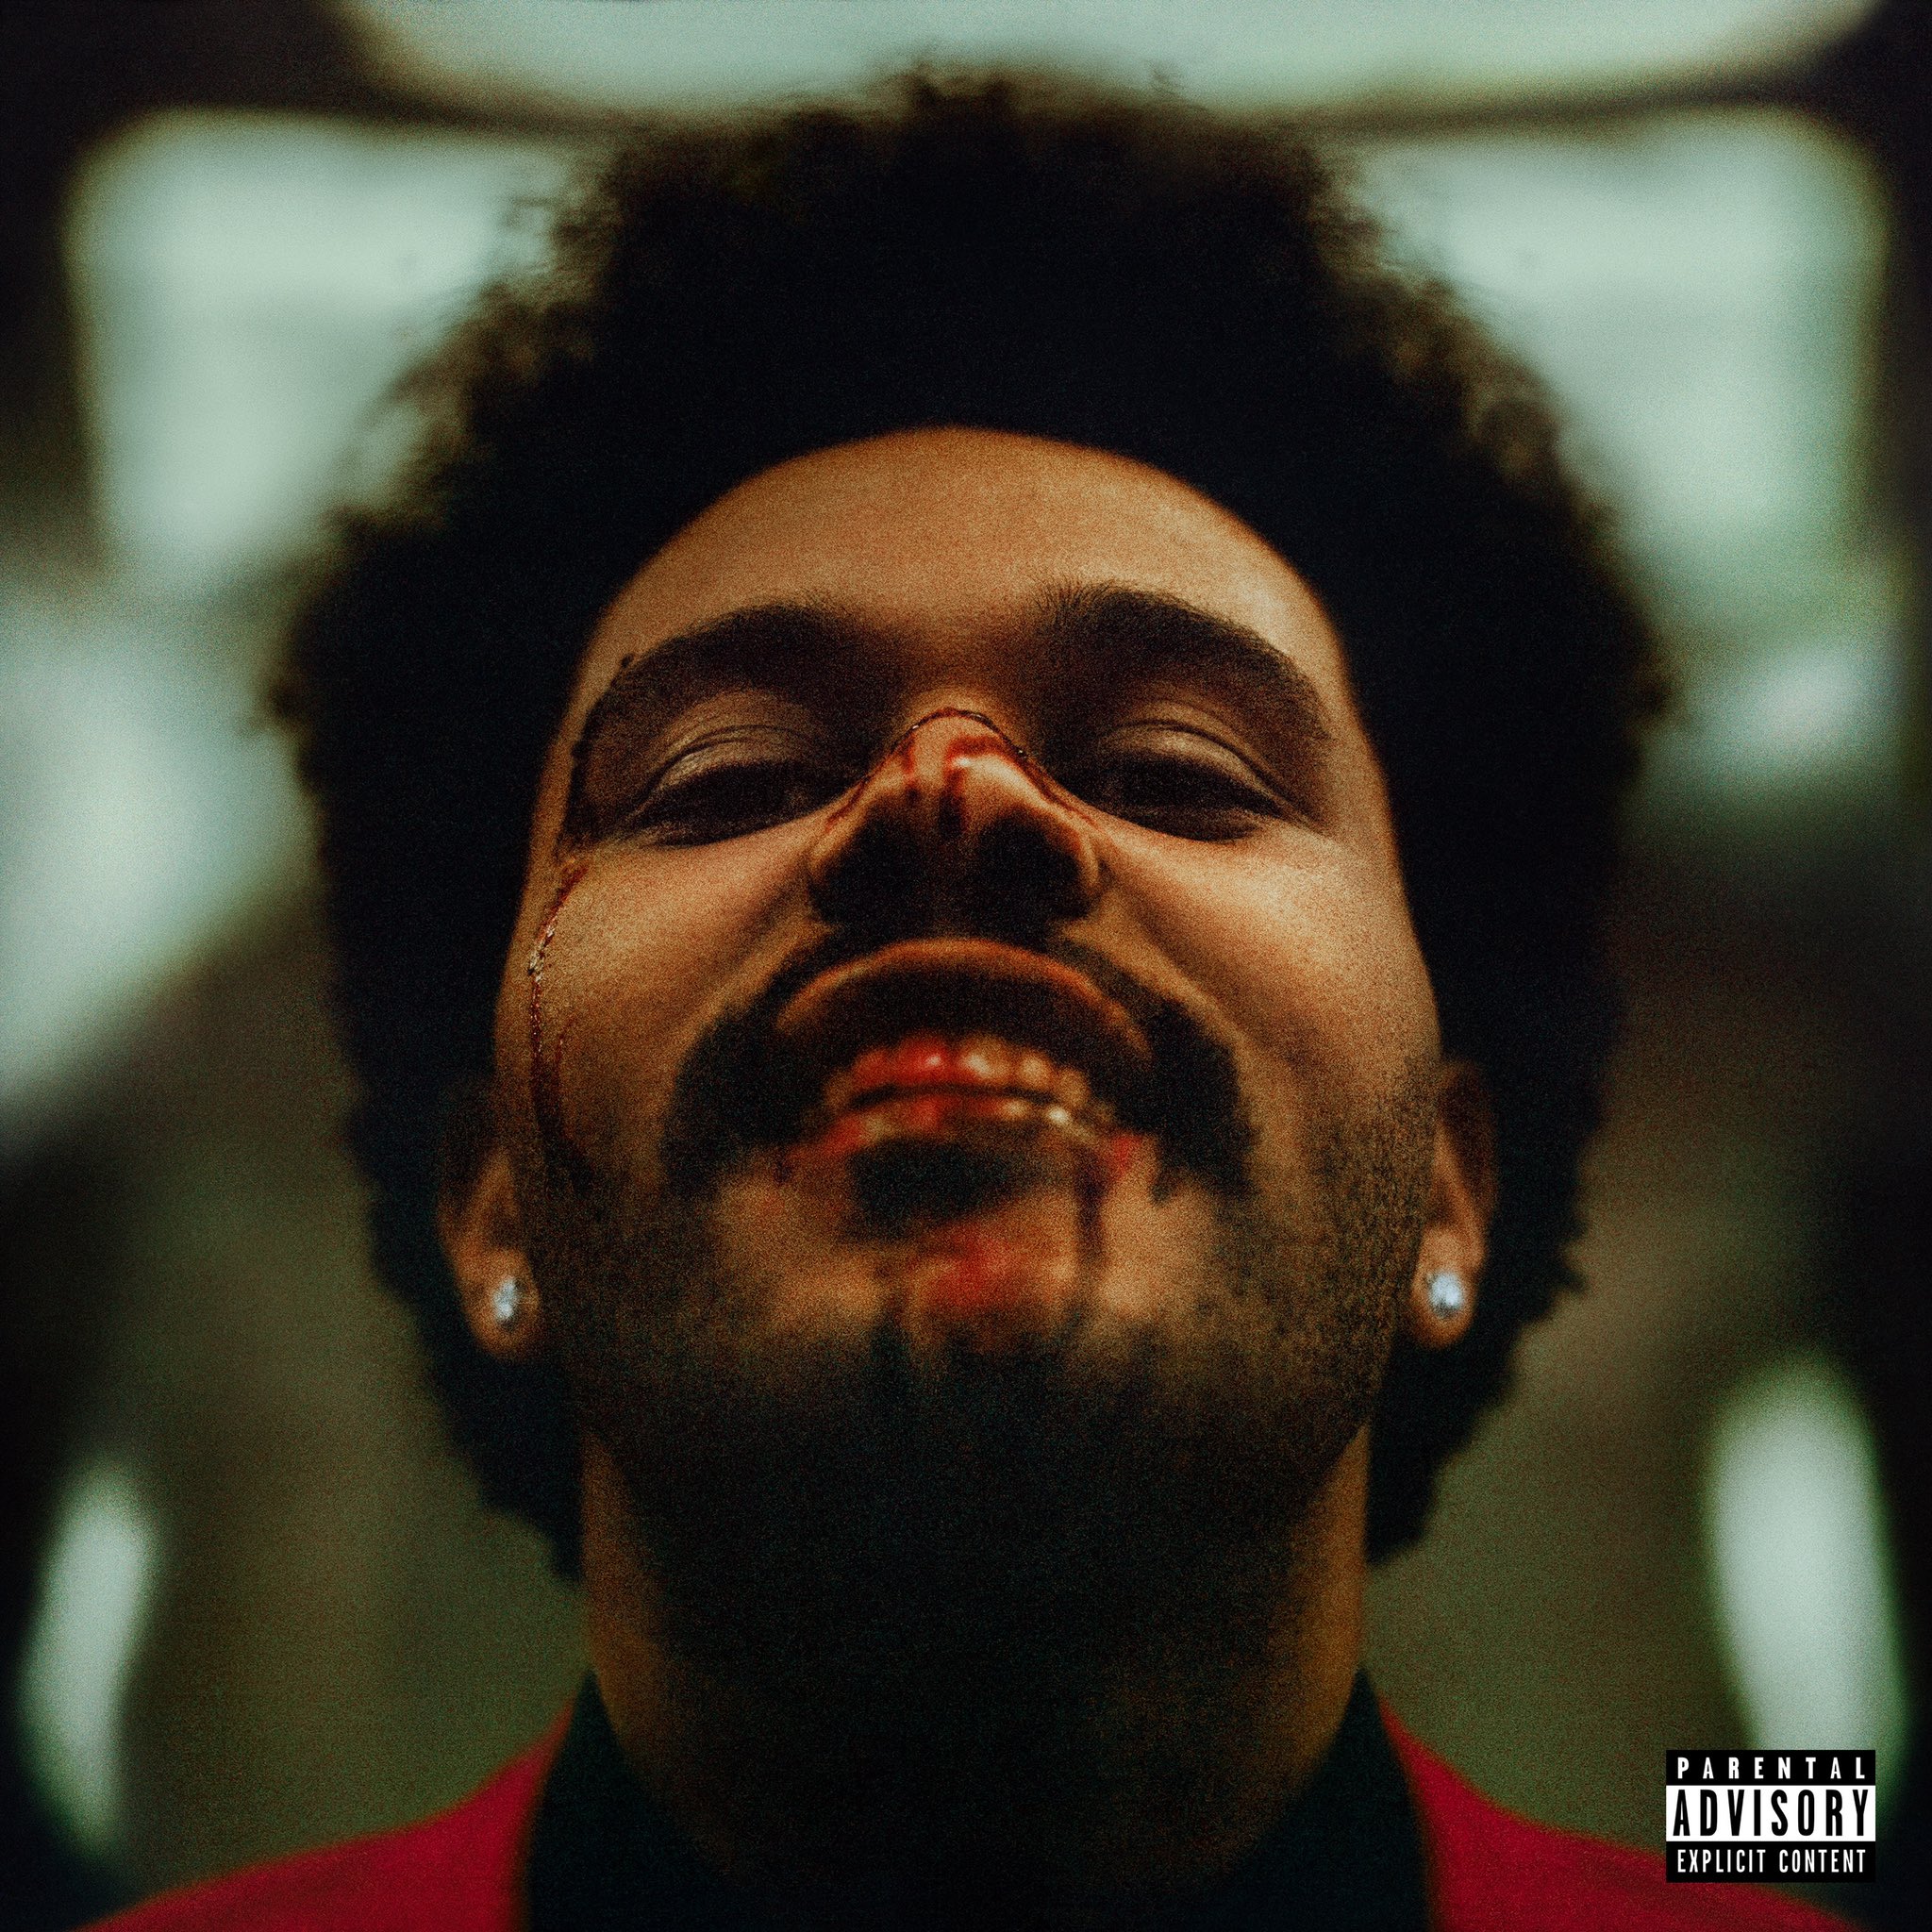 Capa do álbum After Hours. O cantor The Weeknd aparece olhando para a câmera e sorrindo, com sangue escorrendo no nariz e nos dentes. Ele é um homem negro perto dos 30 anos, com cabelo estilo blackpower e um brinco de brilhante em cada orelha, ele usa um terno vermelho